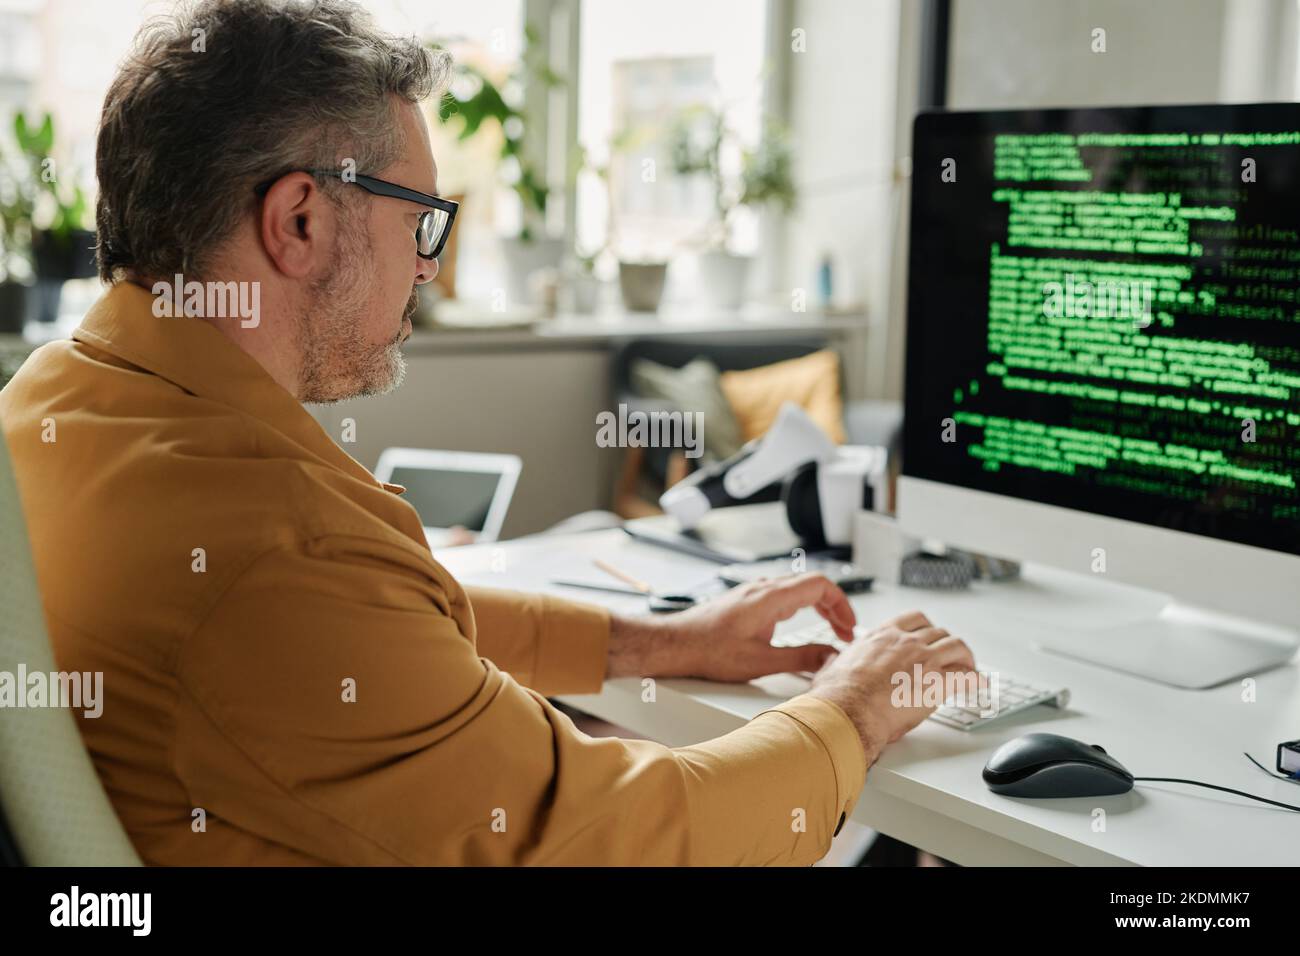 Vue latérale d'un ingénieur INFORMATIQUE sérieux et mature qui tape sur le clavier de l'ordinateur tout en étant assis devant l'écran avec des données codées Banque D'Images